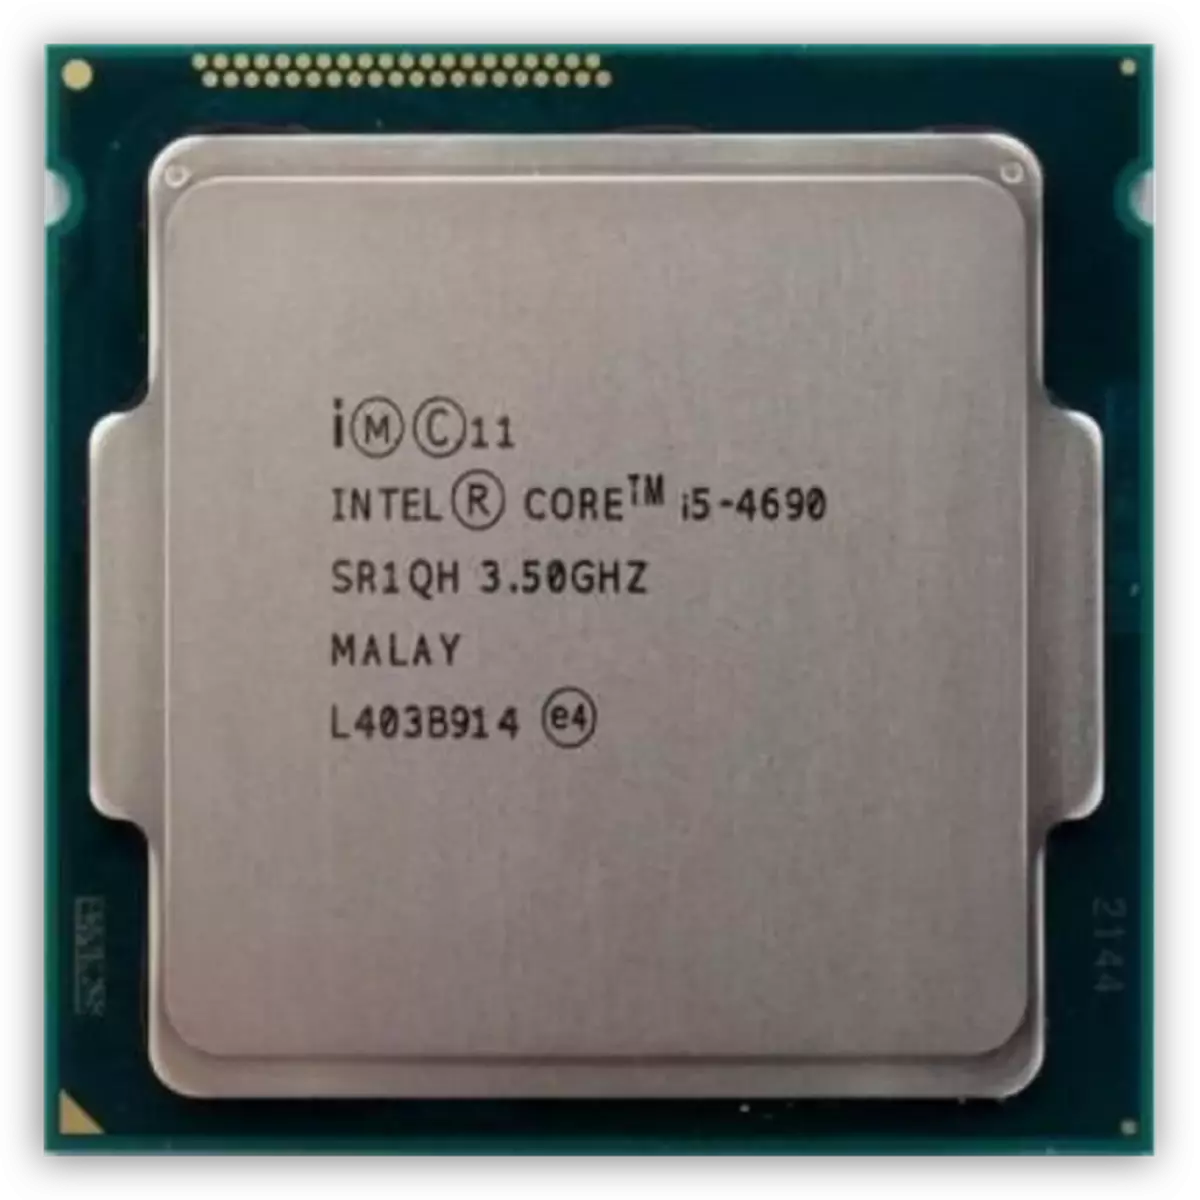 Core i5-4690 processor juu ya usanifu Haswell.